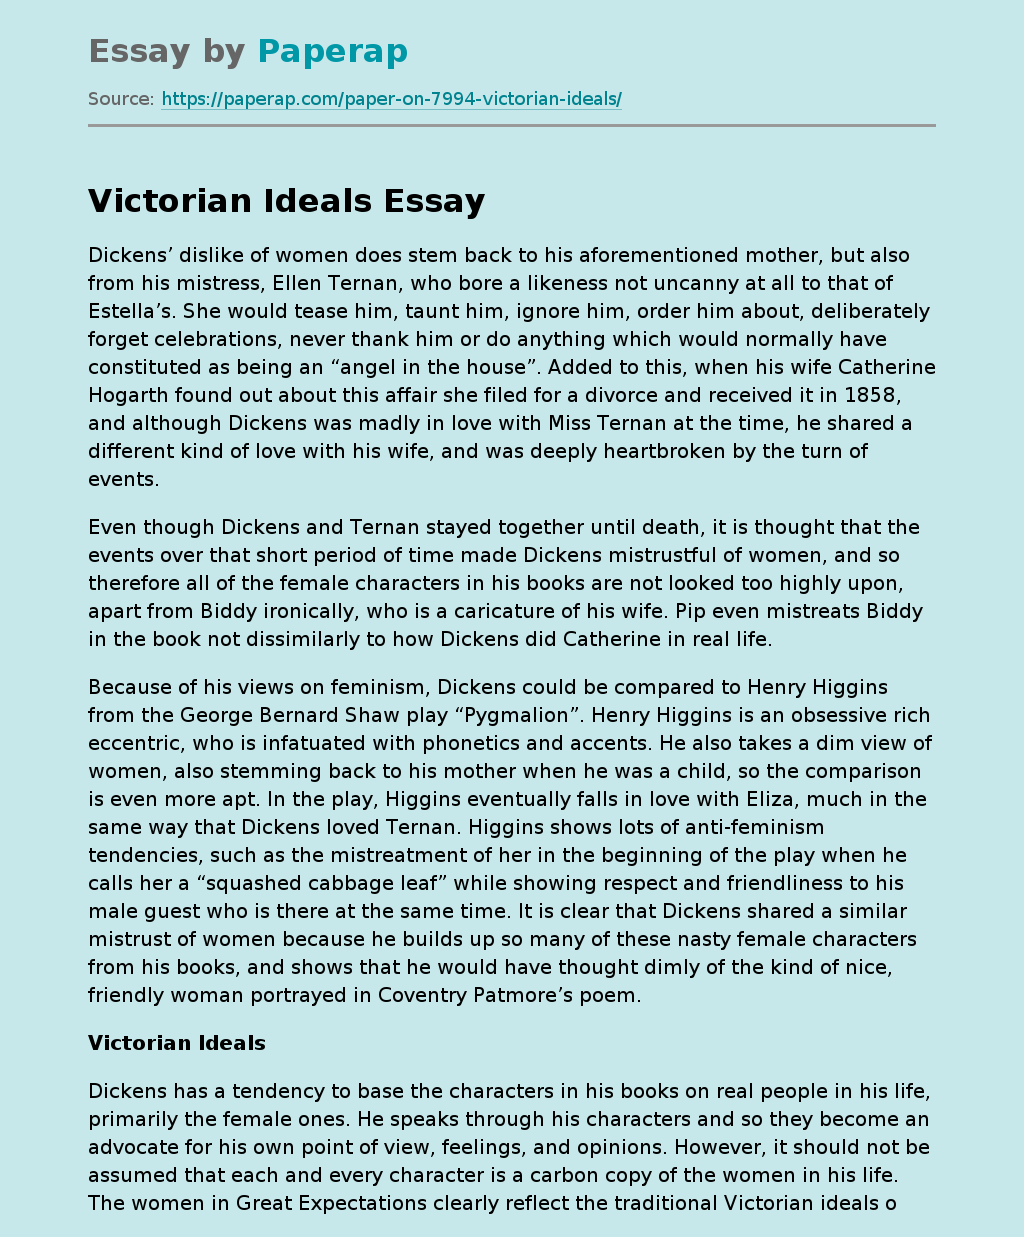 Victorian Ideals